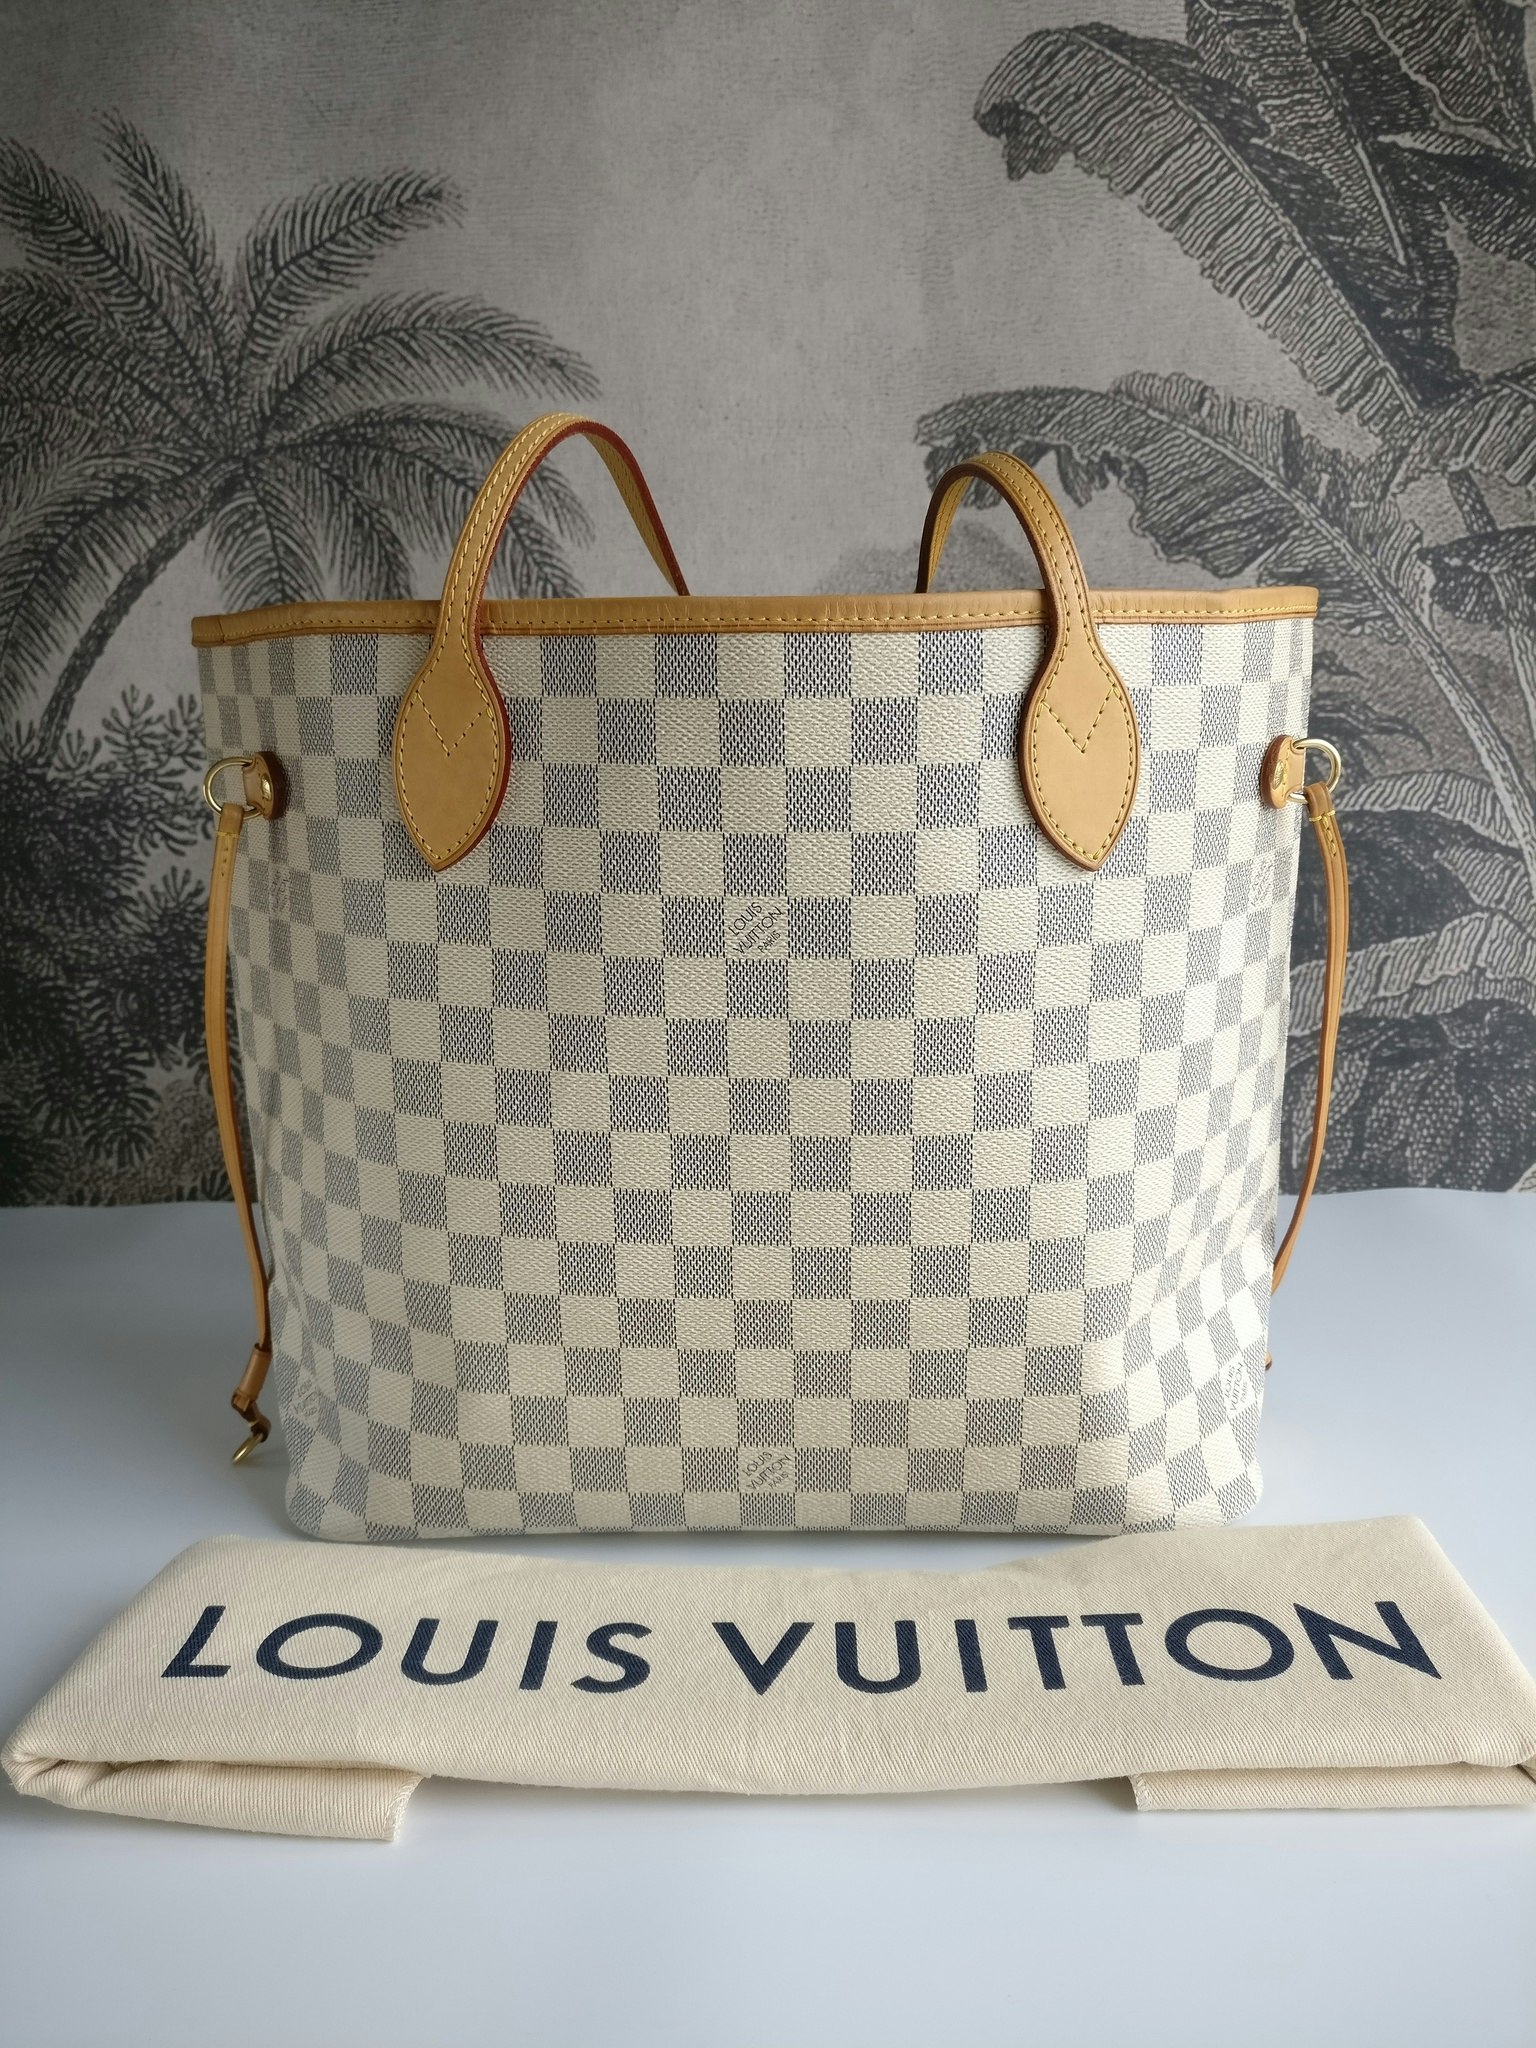 Authentic Louis Vuitton Neverfull Damier Azur mm